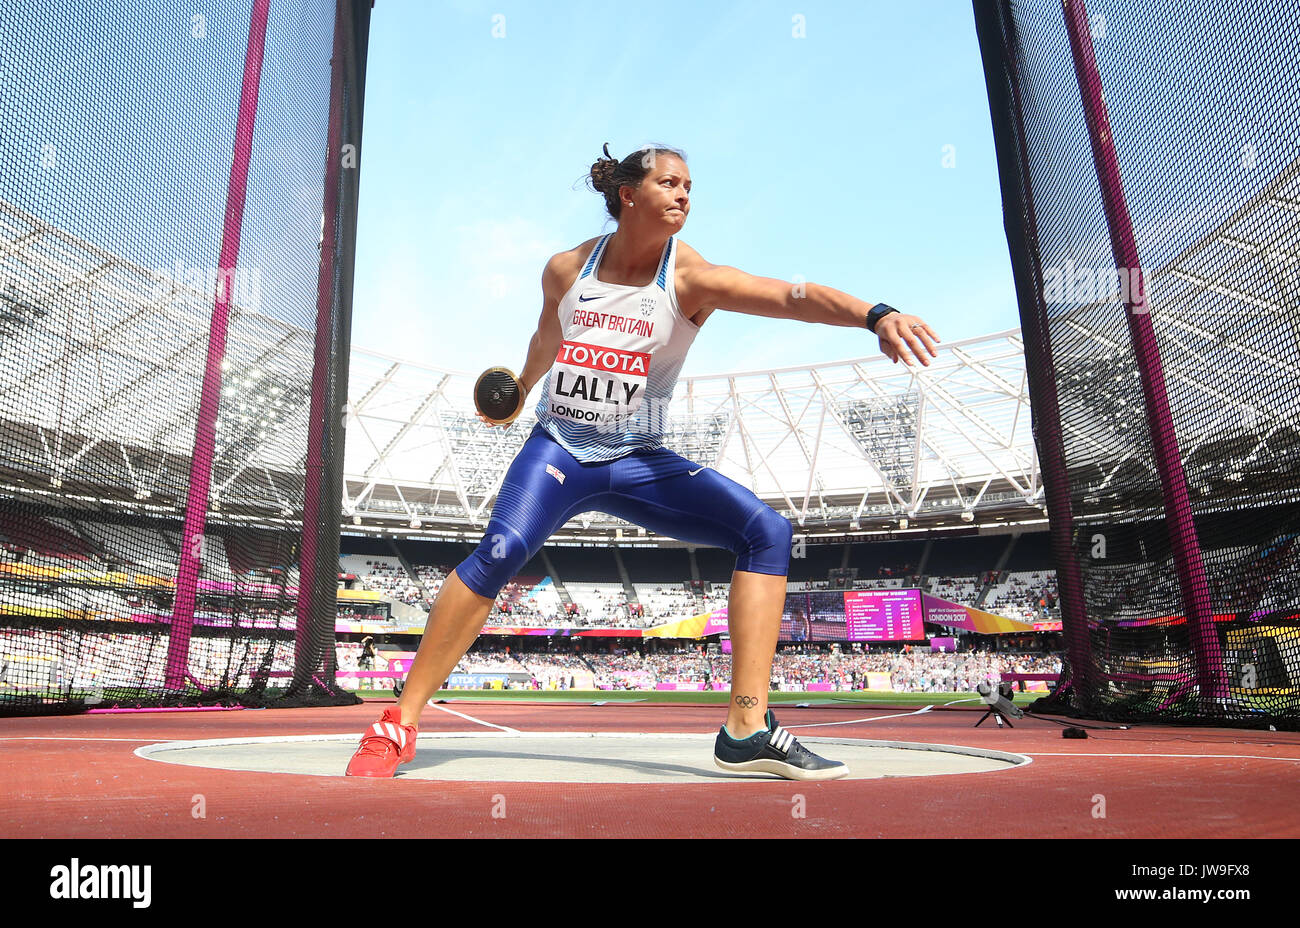 Großbritanniens Jade Lally konkurriert im Diskuswerfen der Frauen Qualifizieren während der Tag acht der Leichtathletik-WM 2017 auf der Londoner Stadion. Stockfoto